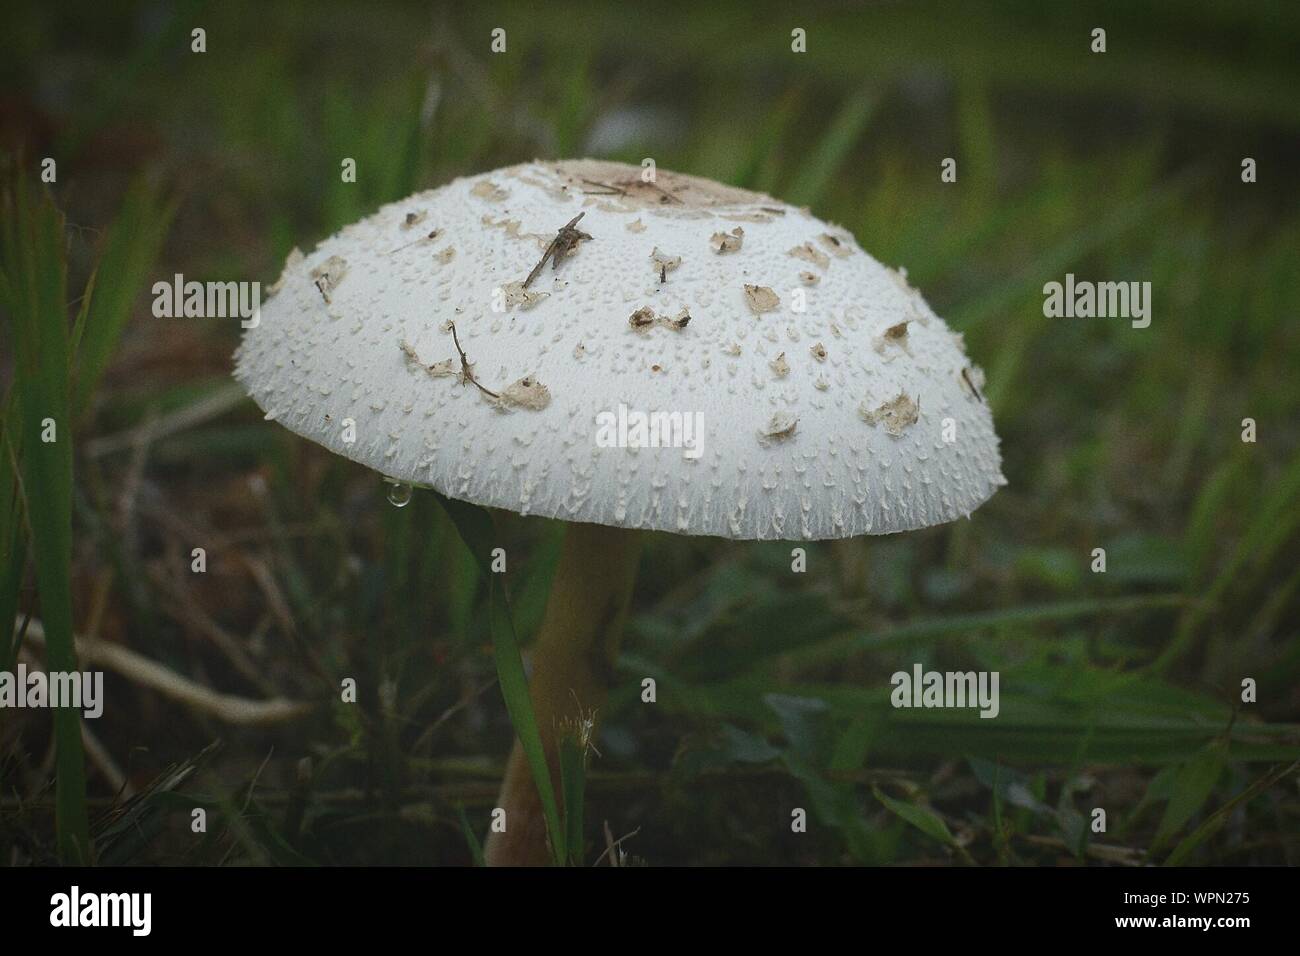 Mushroom Growing On Field In Garden Stock Photo 272140713 Alamy